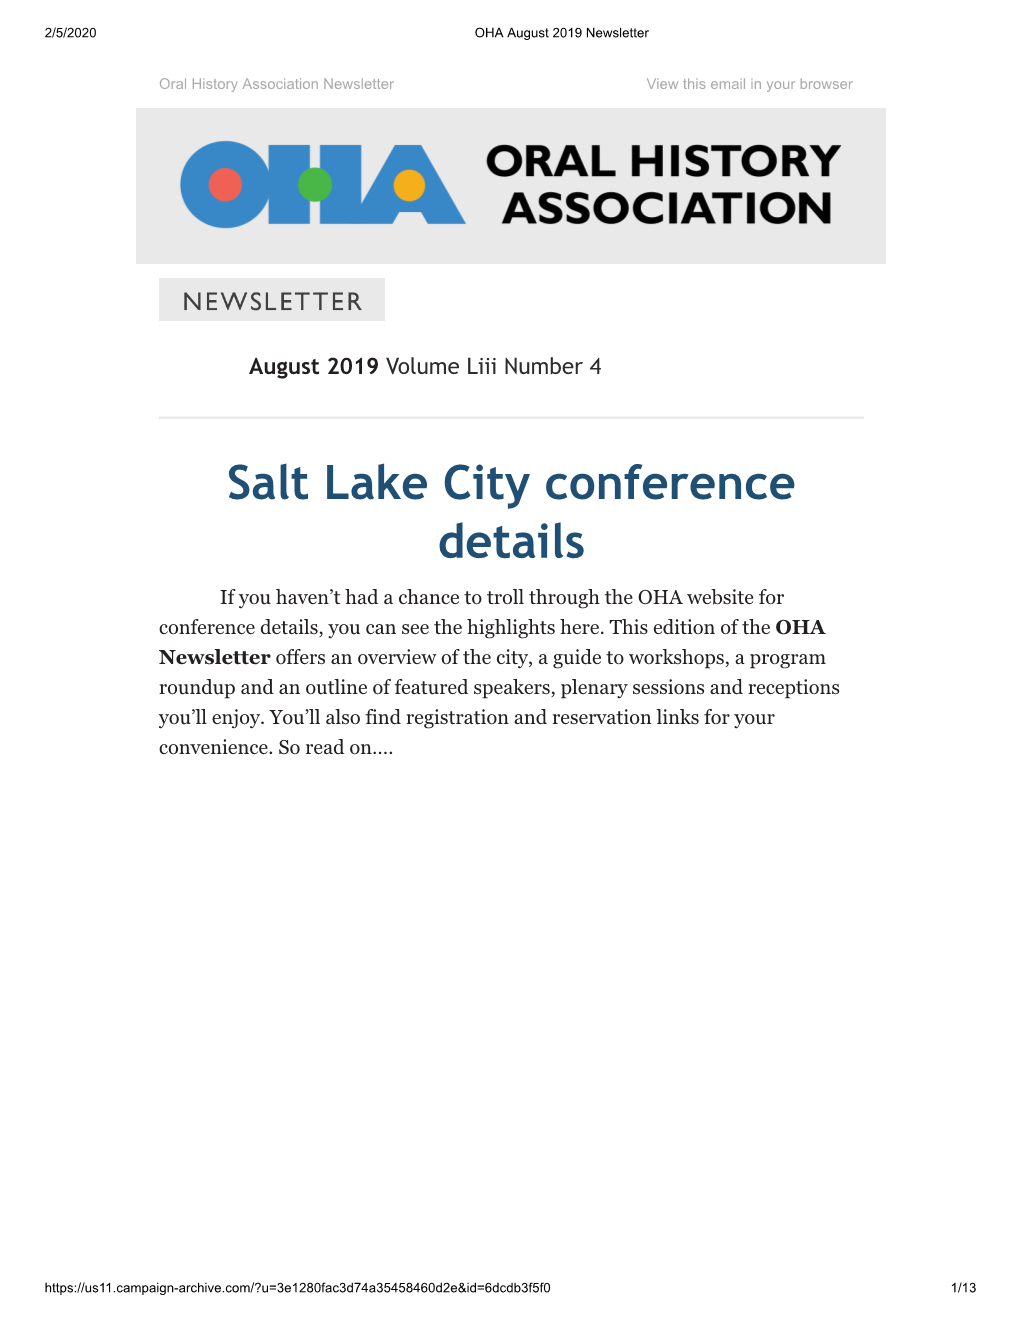 Salt Lake City Conference Details